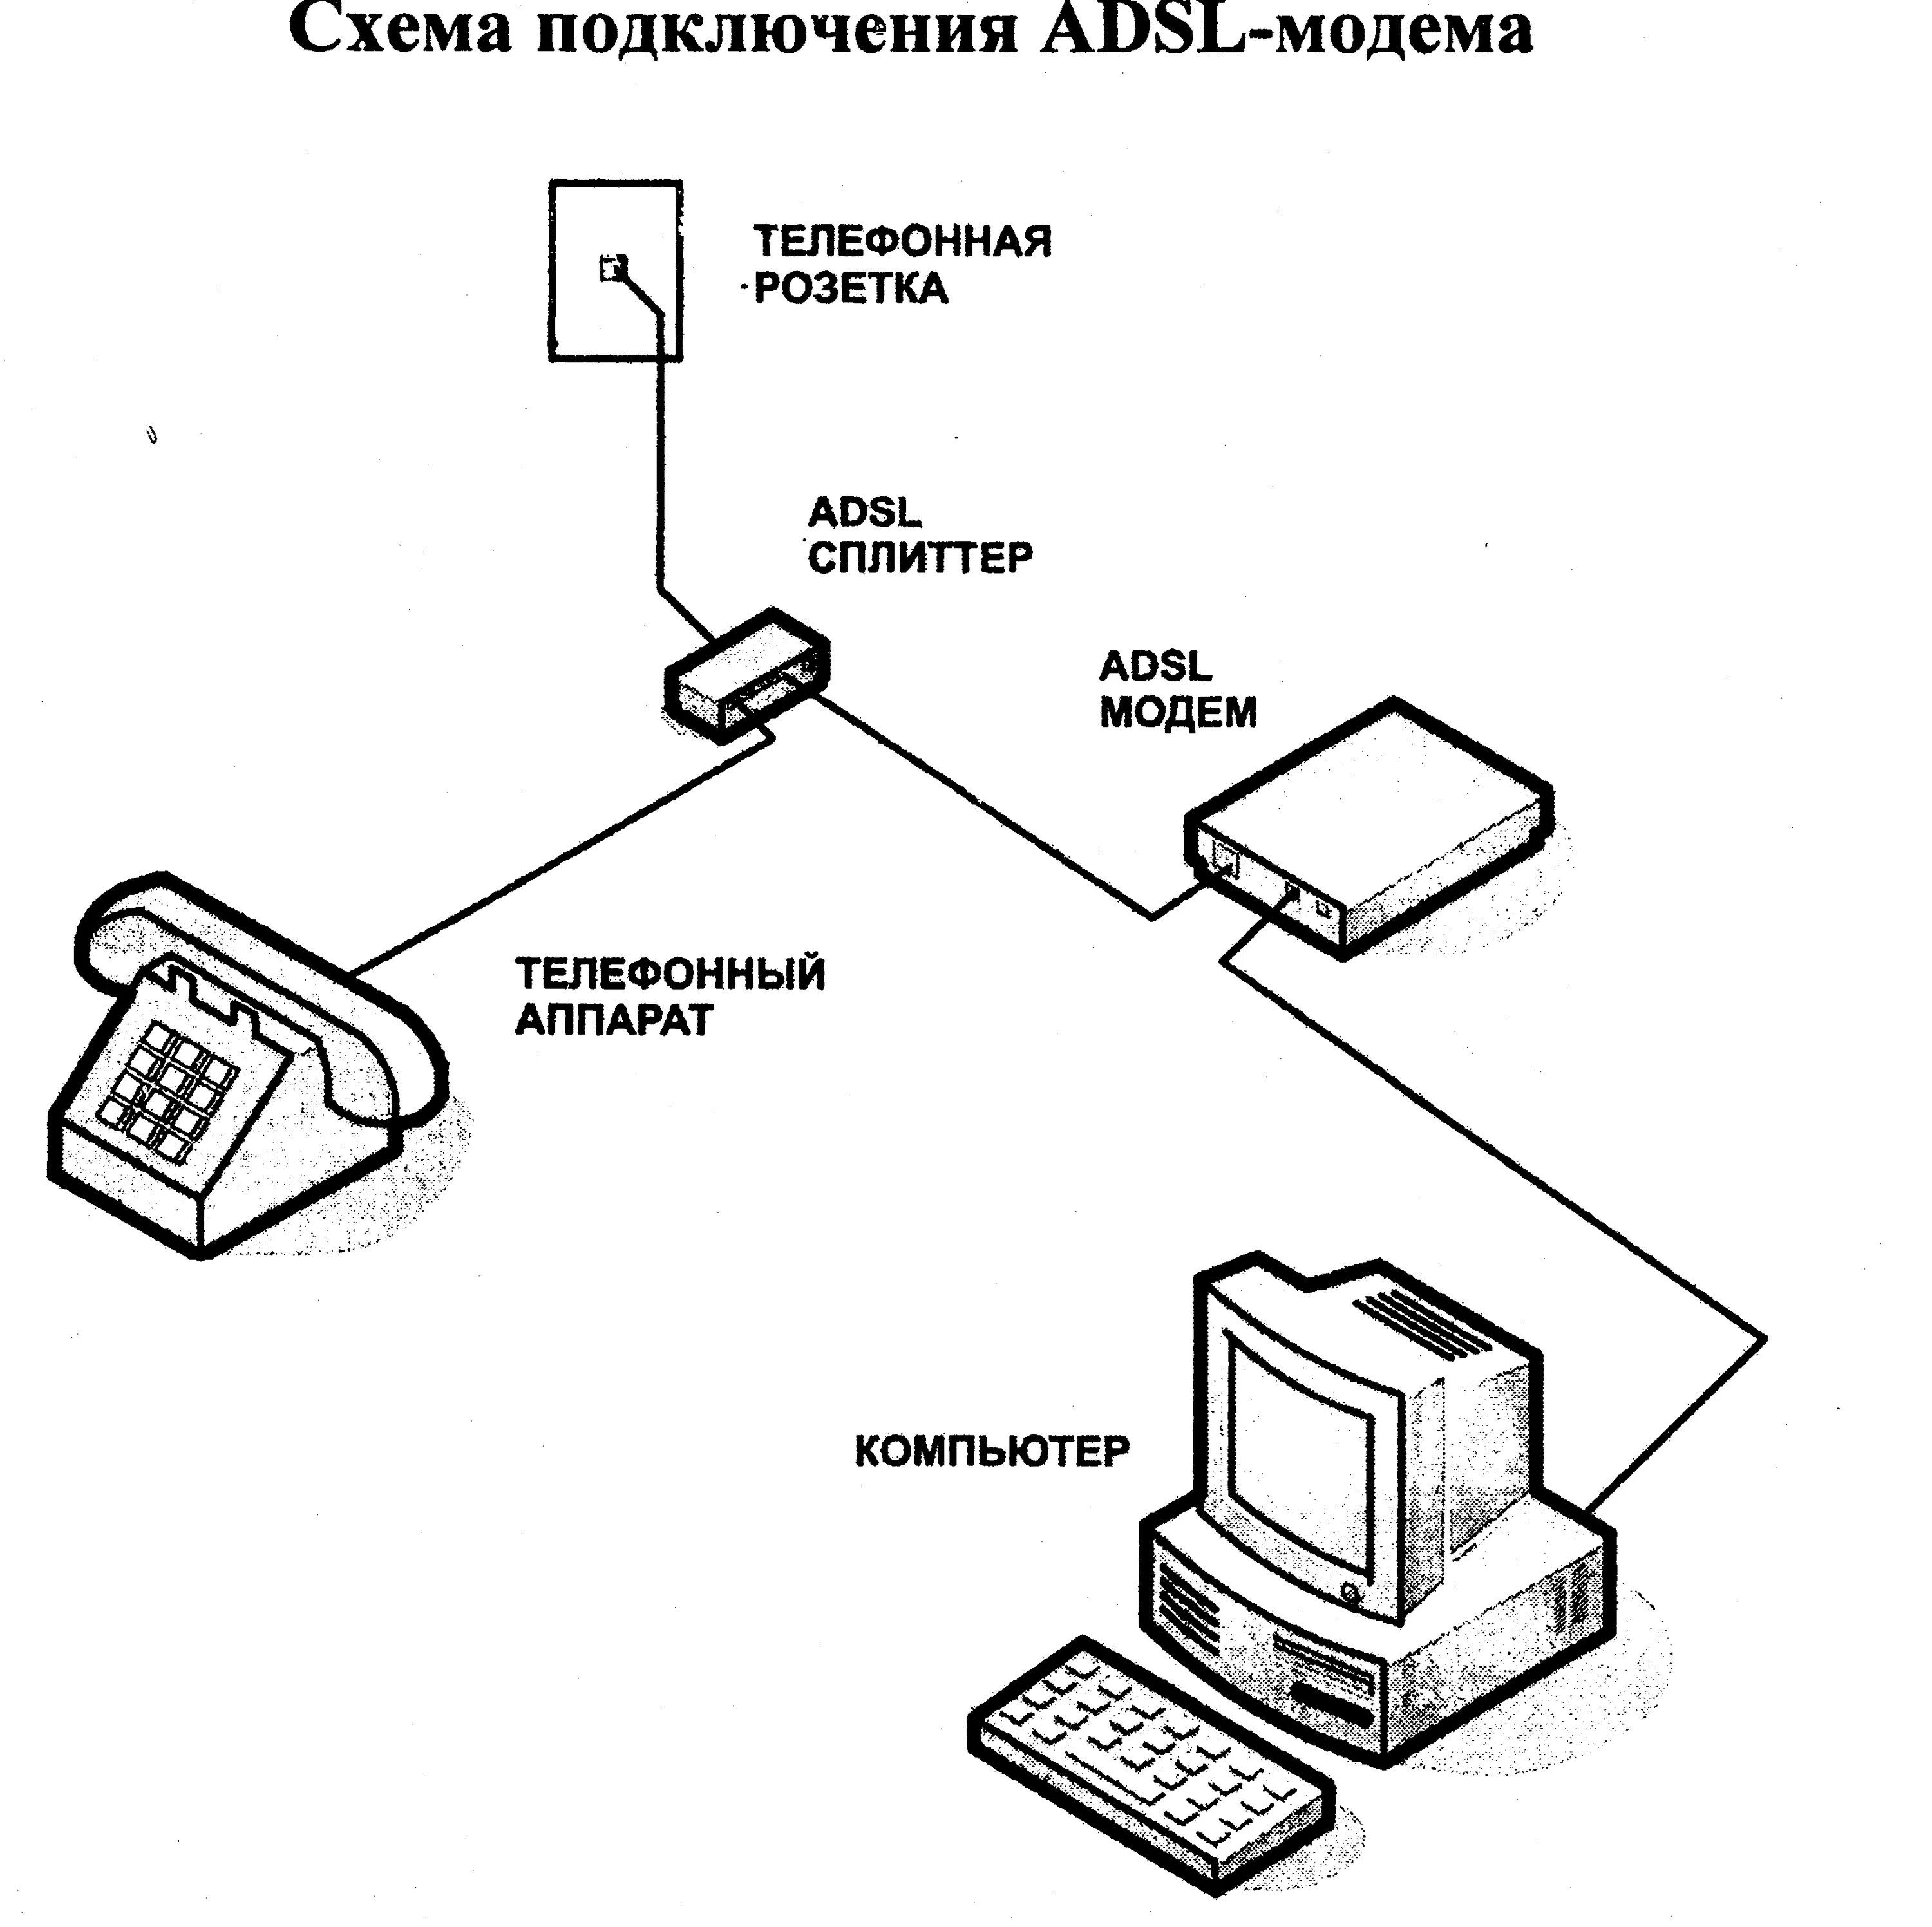 Схема подключить интернет. Схема соединения телефонного кабеля с модемом. Схема ADSL модема. Схема подключения АДСЛ модема. Схема подключения ADSL модема к телефонной линии.